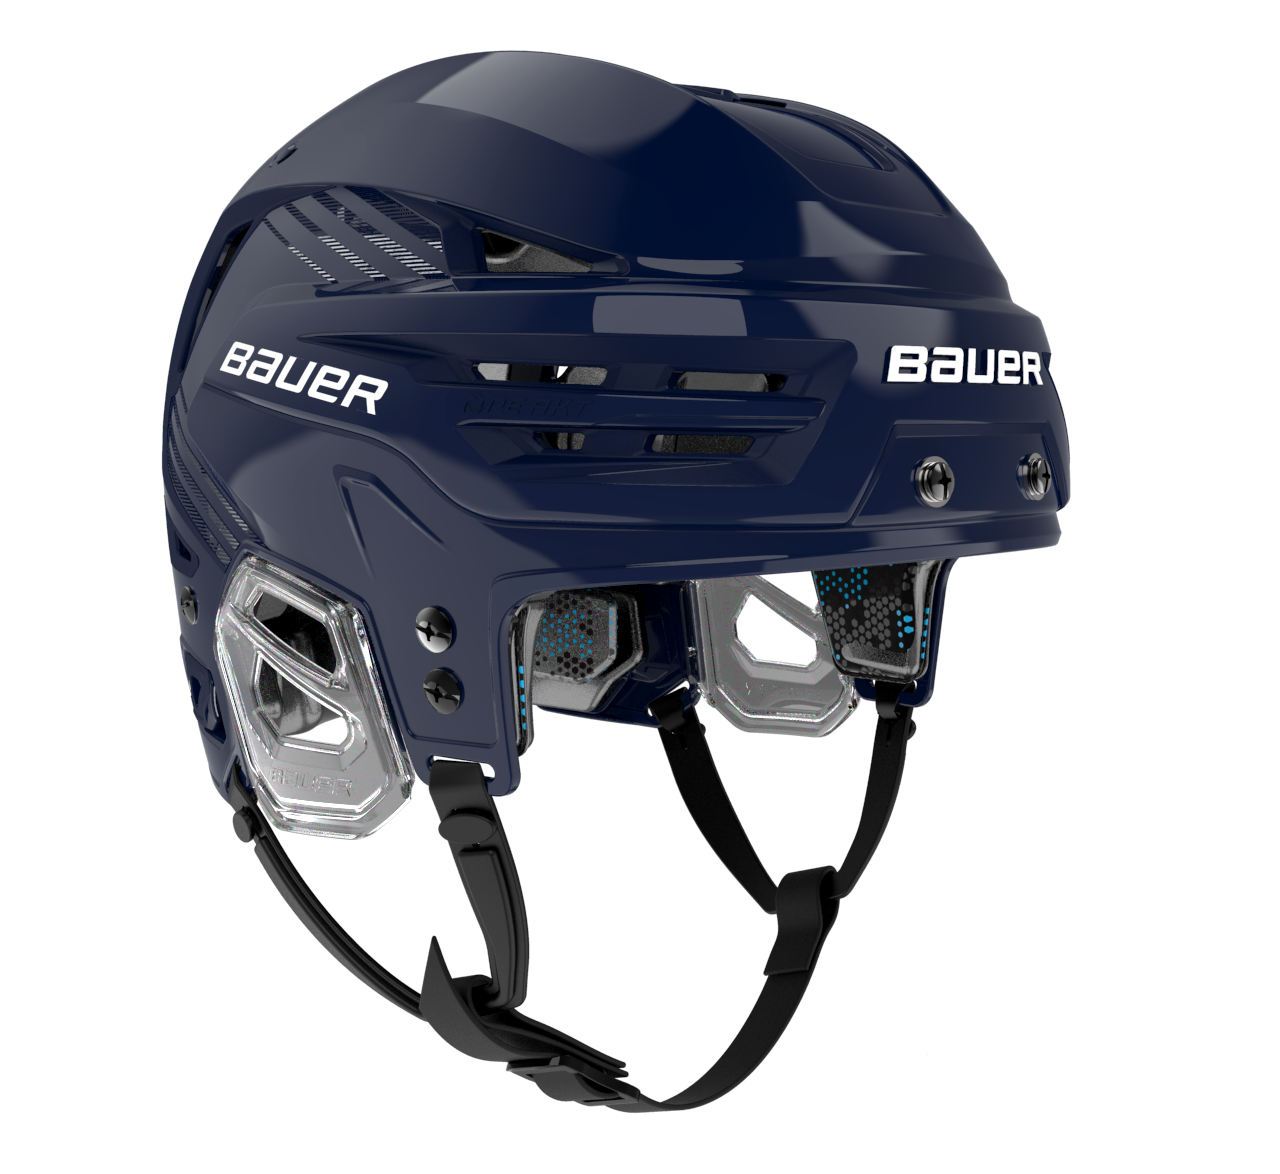 Bauer Re-Akt 85 Hockey Helmet